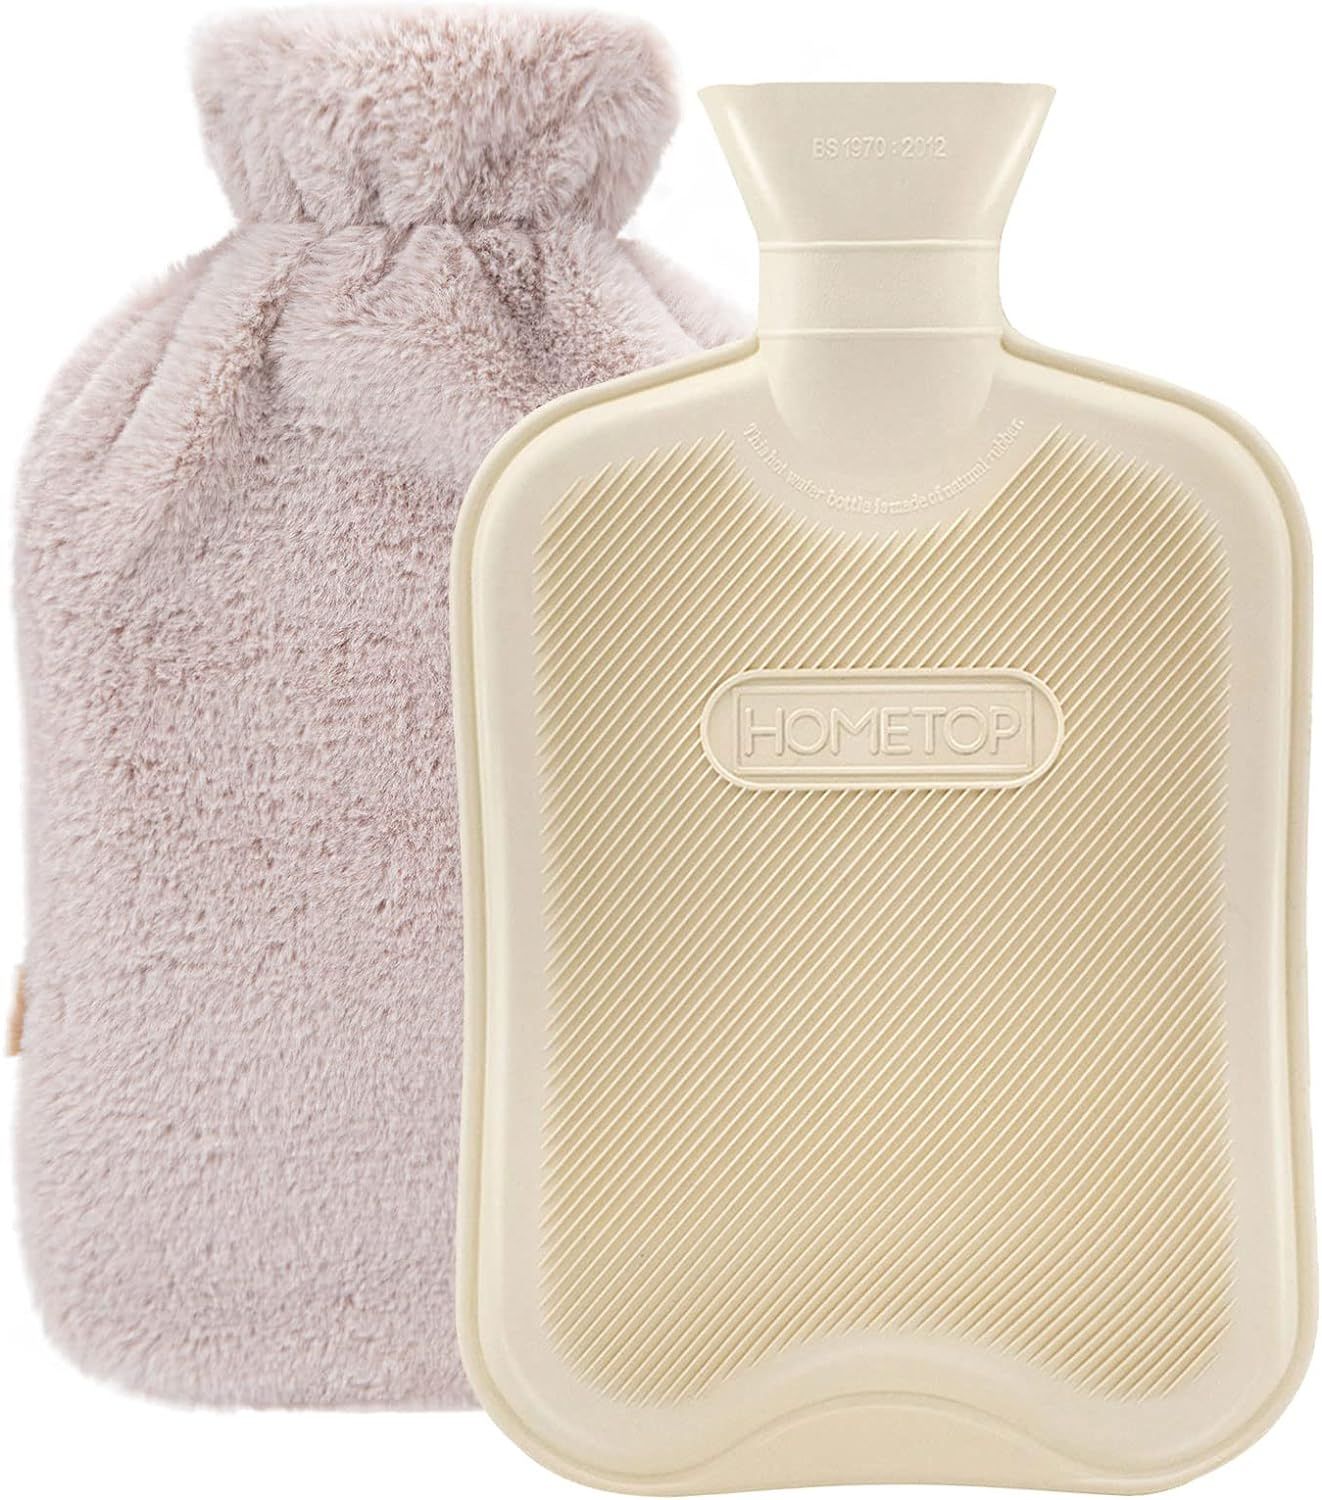 HomeTop Premium Classic Rubber Hot Water Bottle w/Luxurious Faux Fur Plush Fleece Cover (2L, Crea... | Amazon (US)